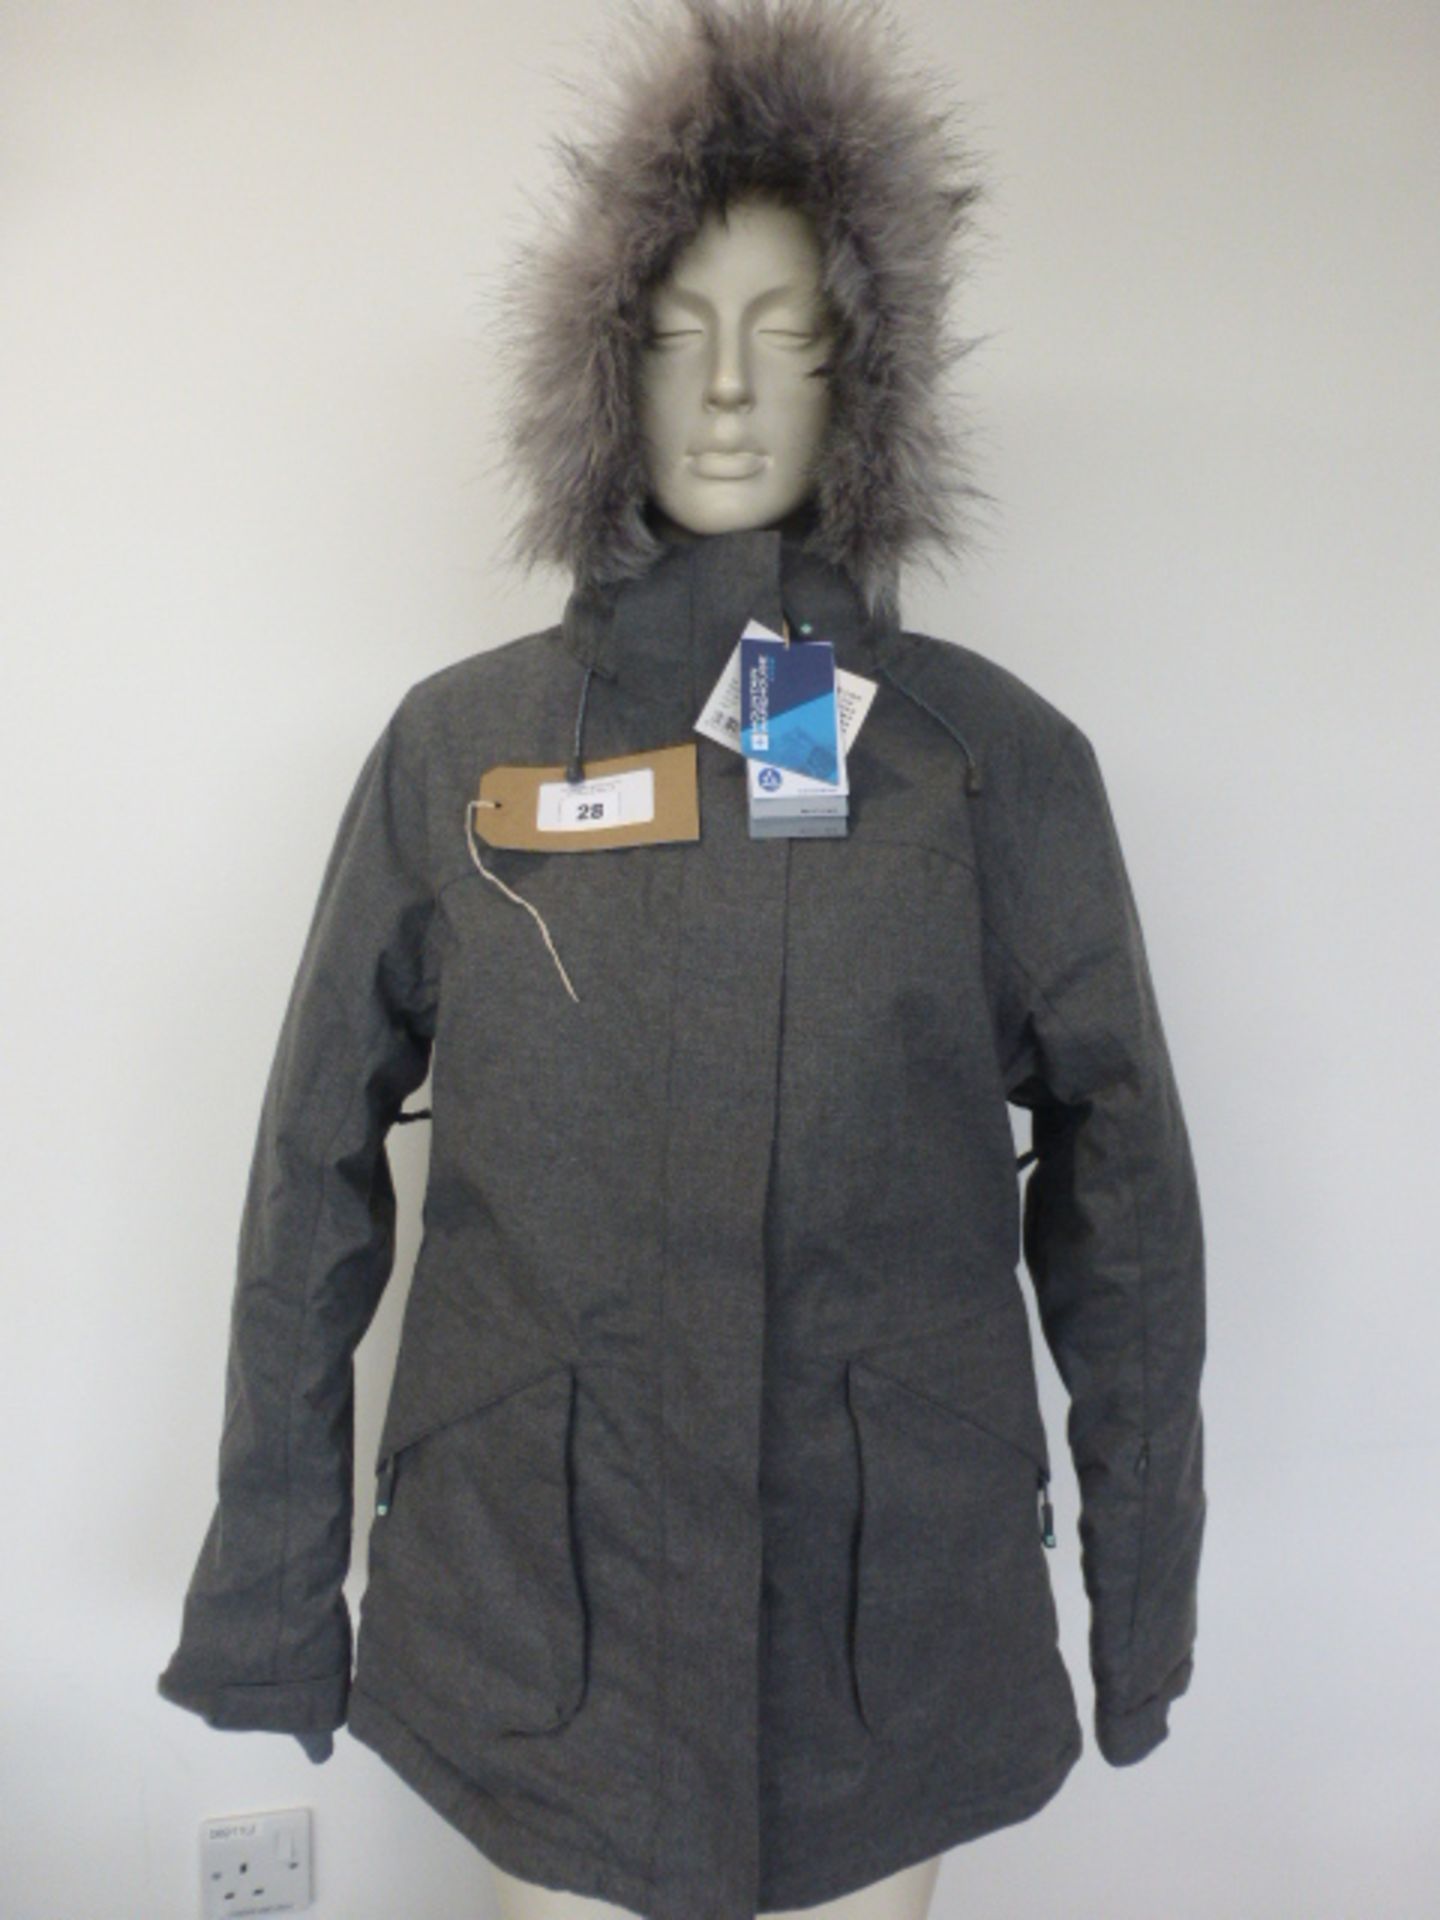 Mountain Warehouse Snow ladies textured ski jacket in grey size 14